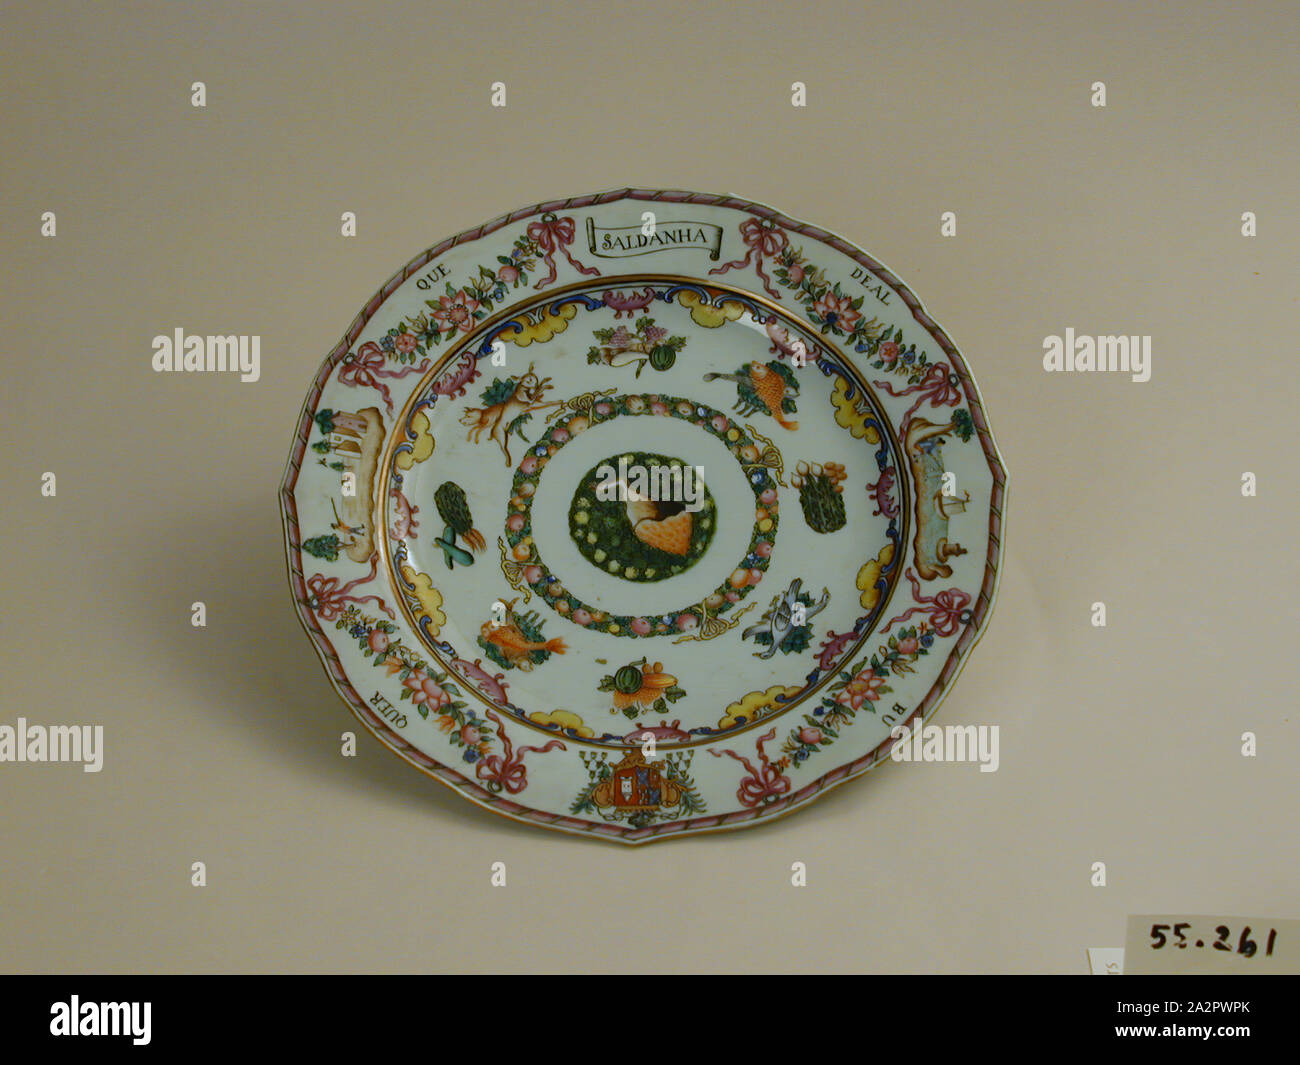 Inconnu (Chinois), assiette, fin du xviiie siècle, émaillée porcelaine pâte dure avec émail polychrome, Hauteur x diamètre : 1 x 8 7/8 in. (2,5 x 22,5 cm Banque D'Images